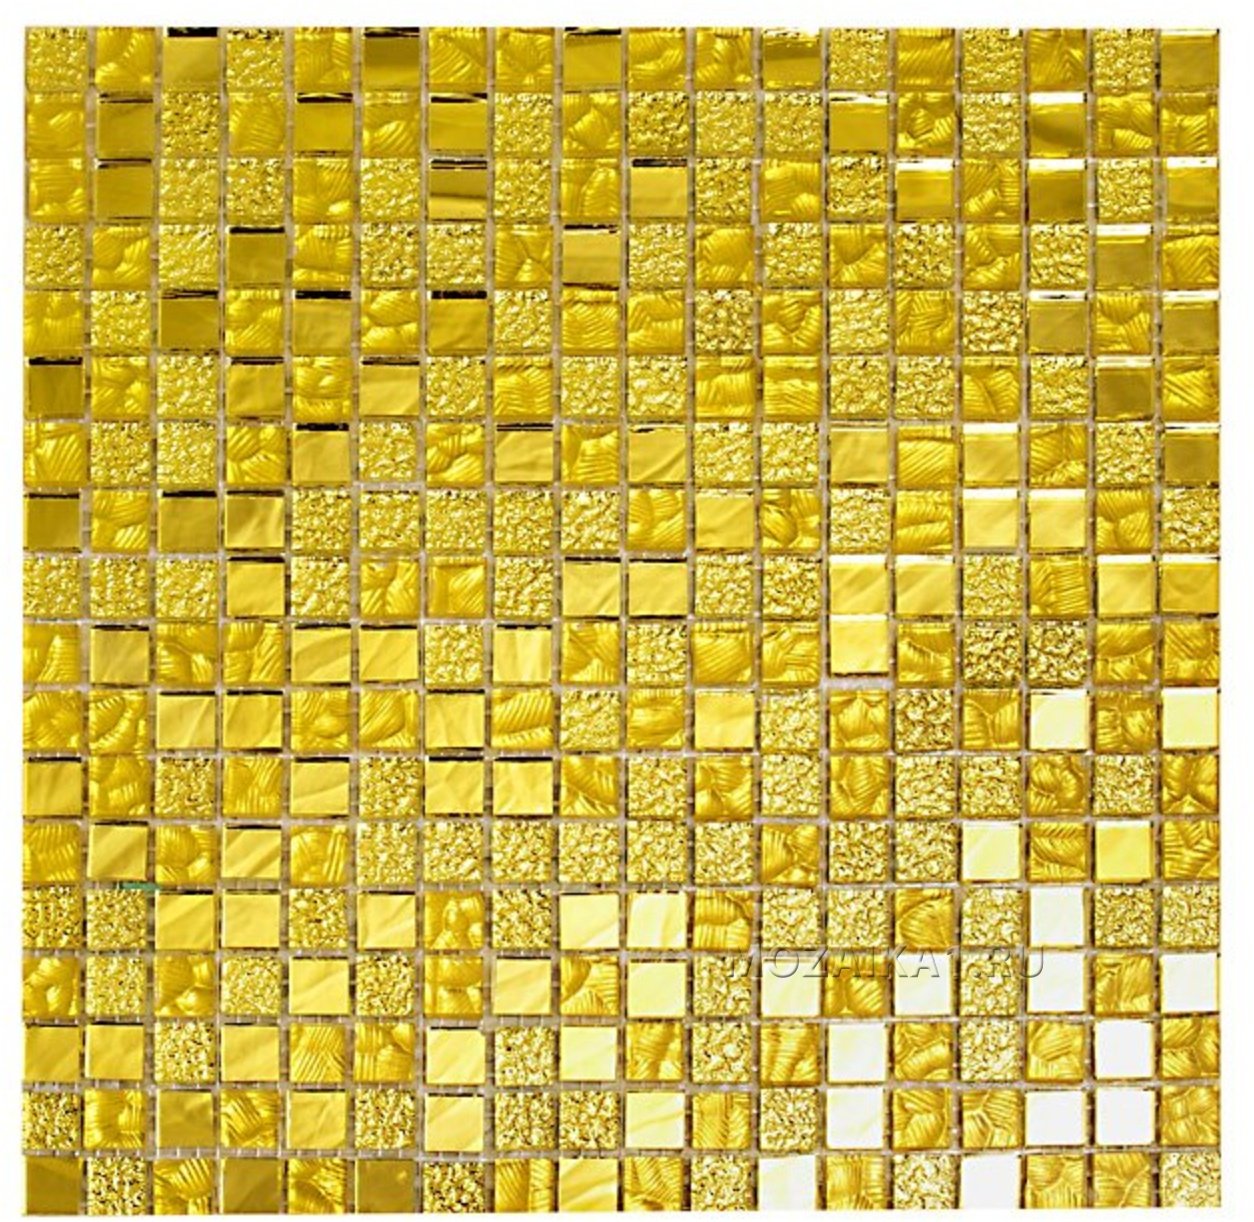 Купить мозаику для ванной plitka mosaica ru. Мозаика ht251. Ht131 мозаика. Мозаика imagine ht130. Ht151 мозаика.